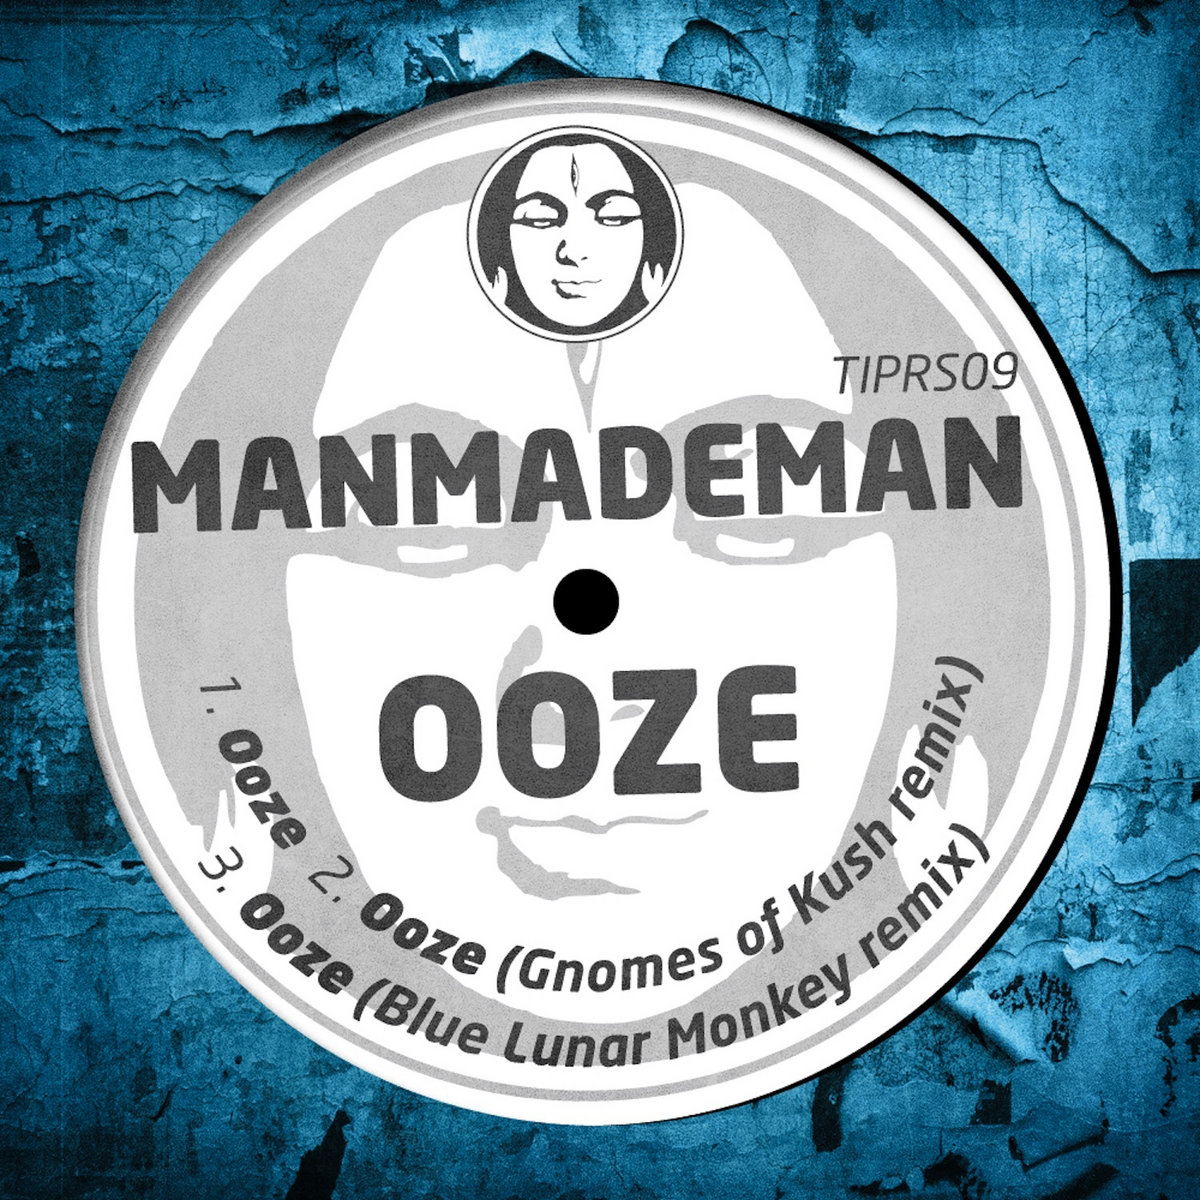 manmademan ooze